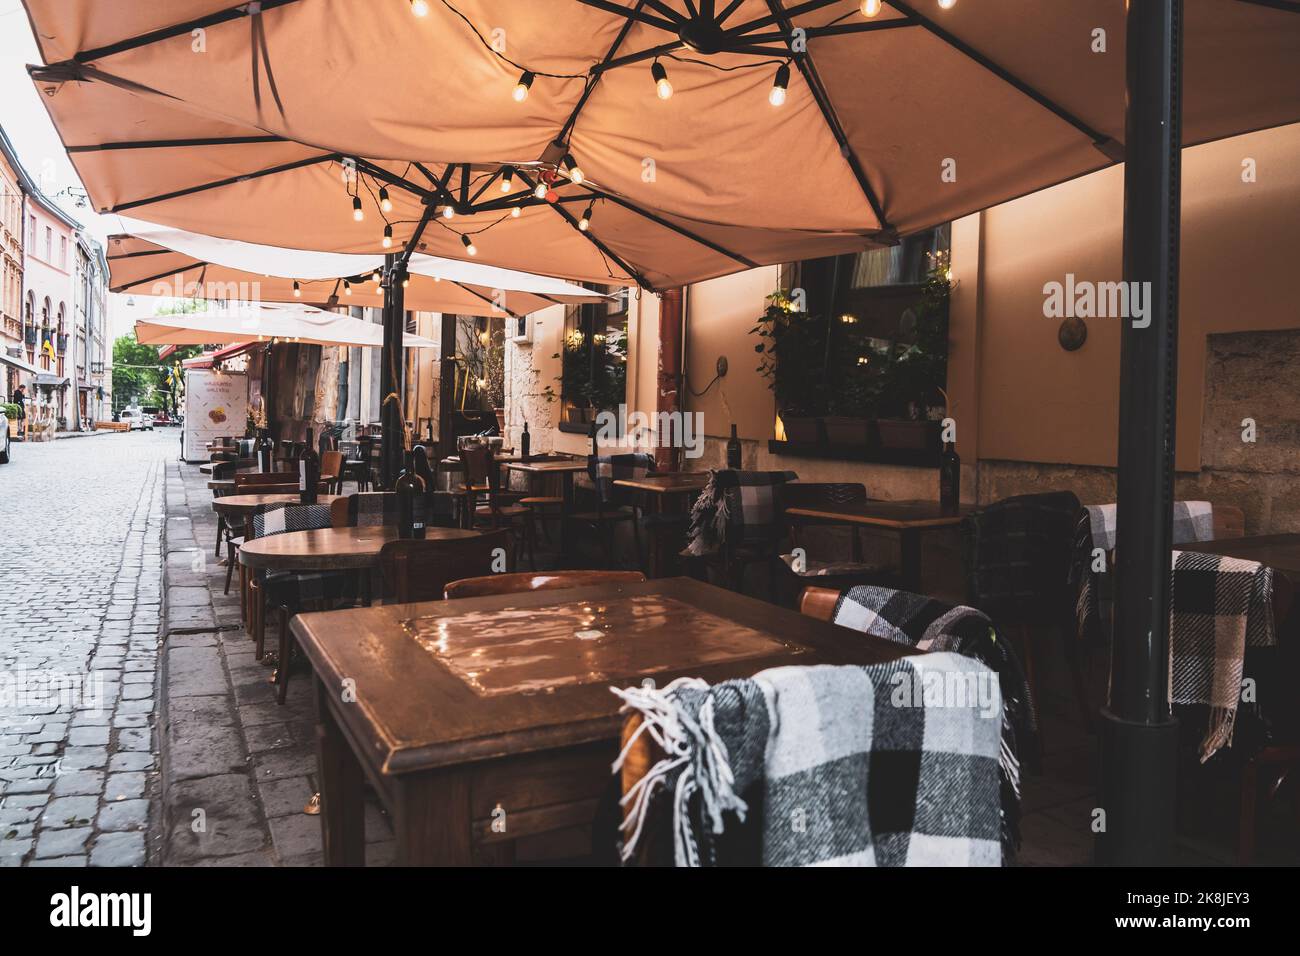 Verbringen Sie Zeit auf der Terrasse: Gemütliches Straßencafé mit hölzernen Korbstühlen und blühenden Hortensien. Garten oder Datscha Restaurant außerhalb der Stadt. Stilvoller pa Stockfoto